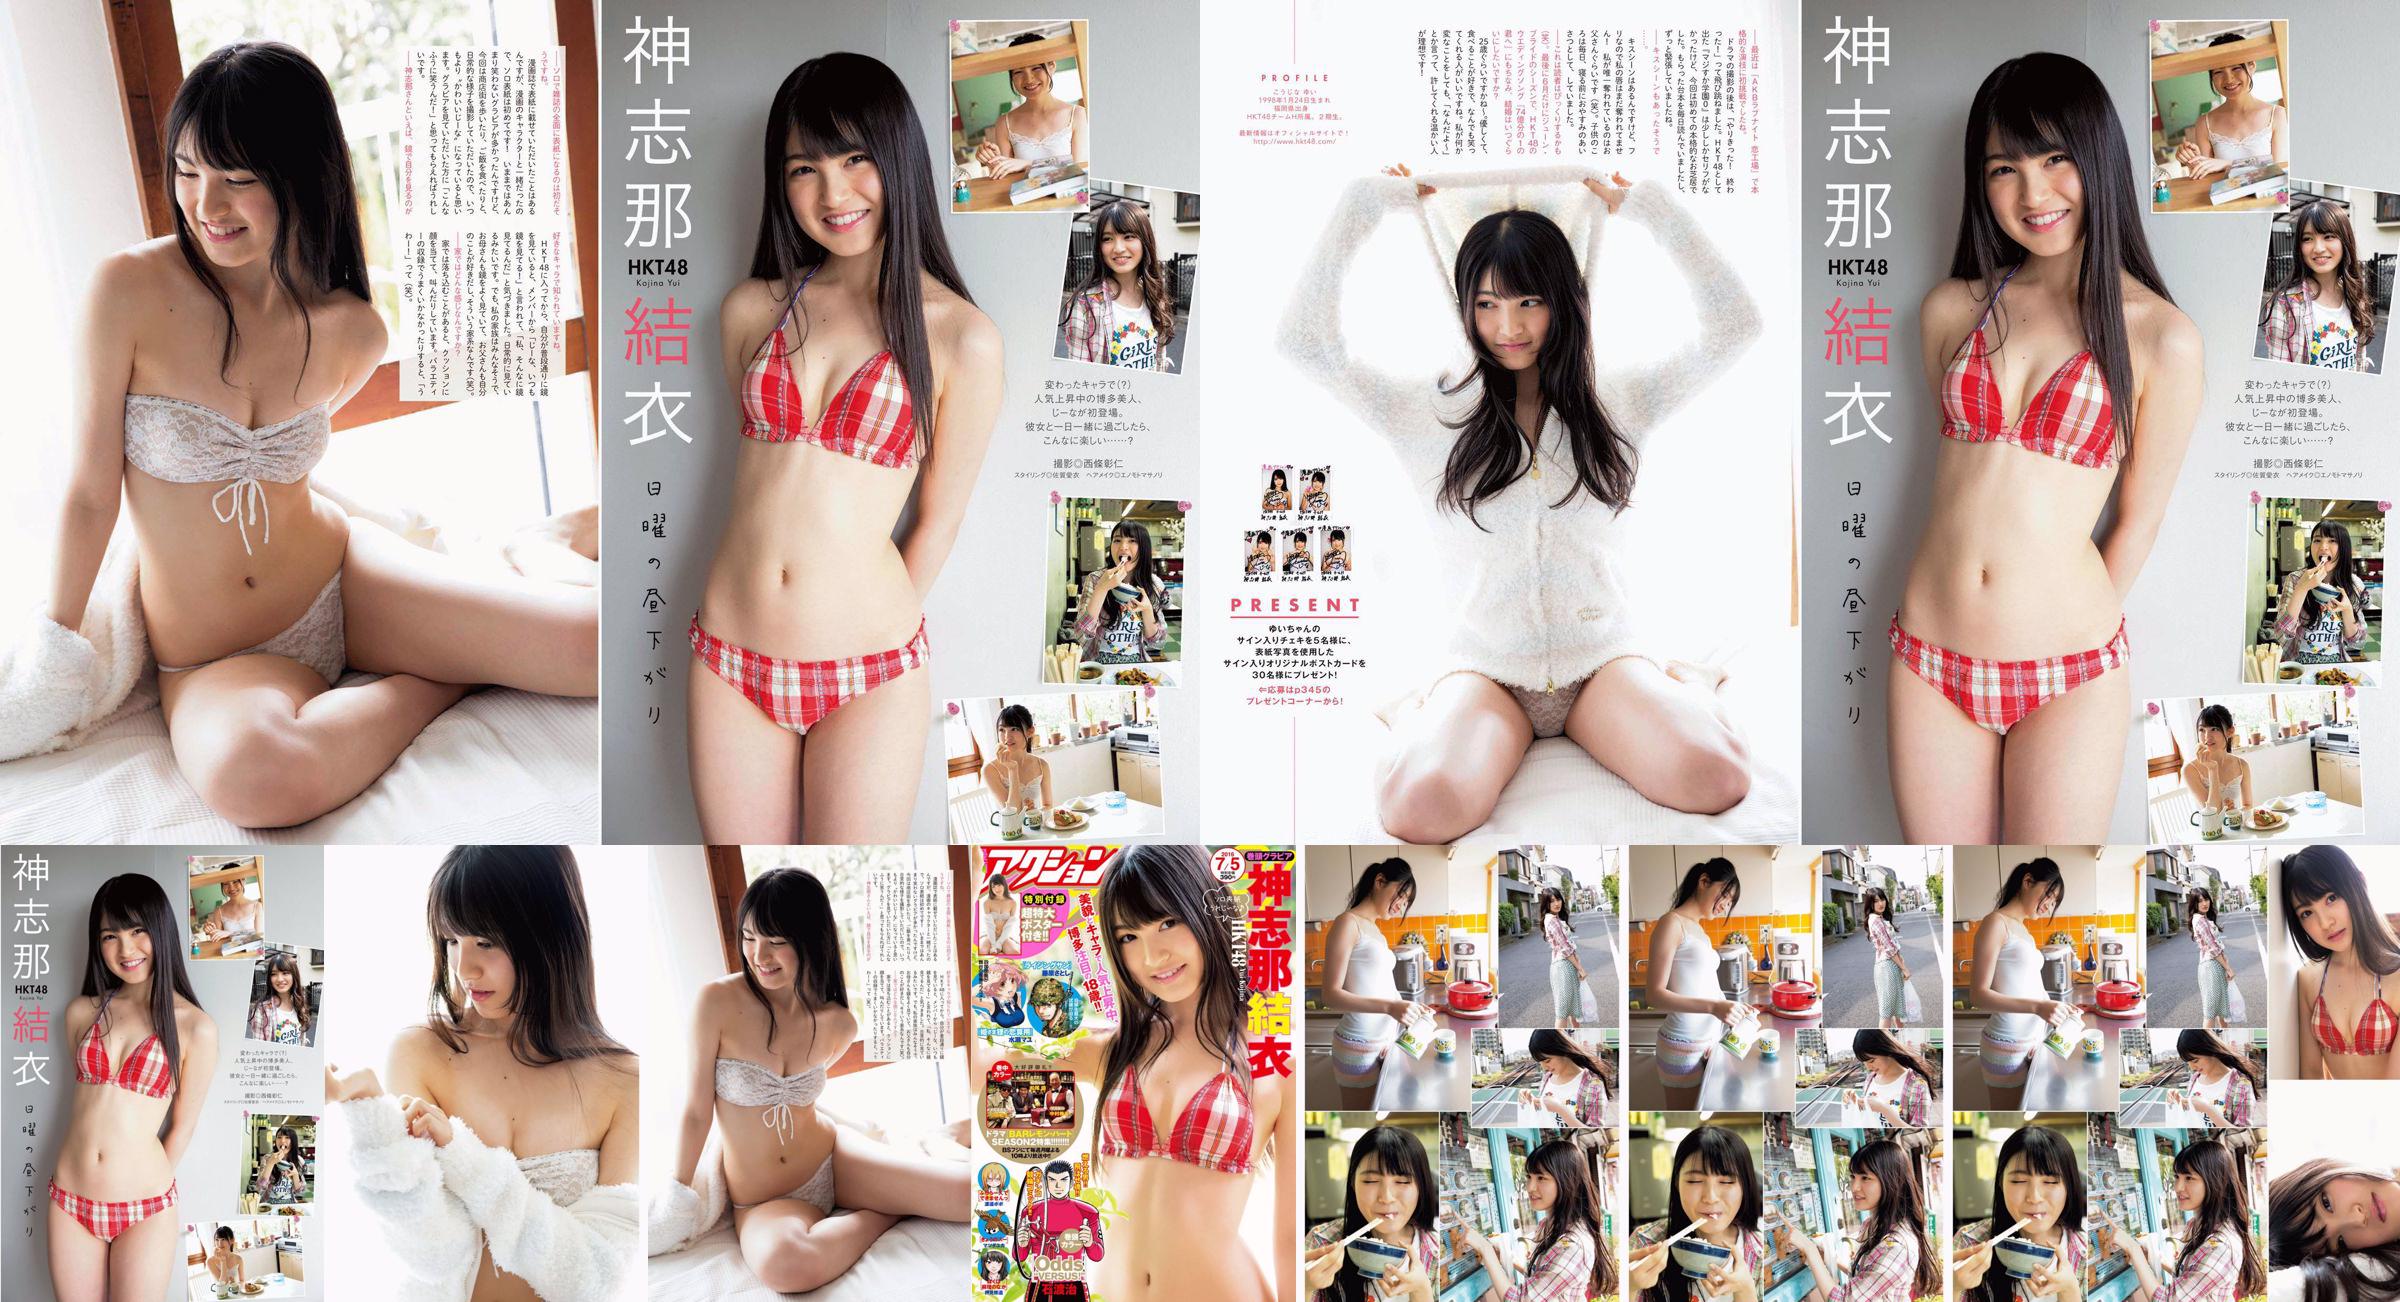 [Manga Action] Shinshina Yui 2016 No.13 Photo Magazine No.e2151f Page 1